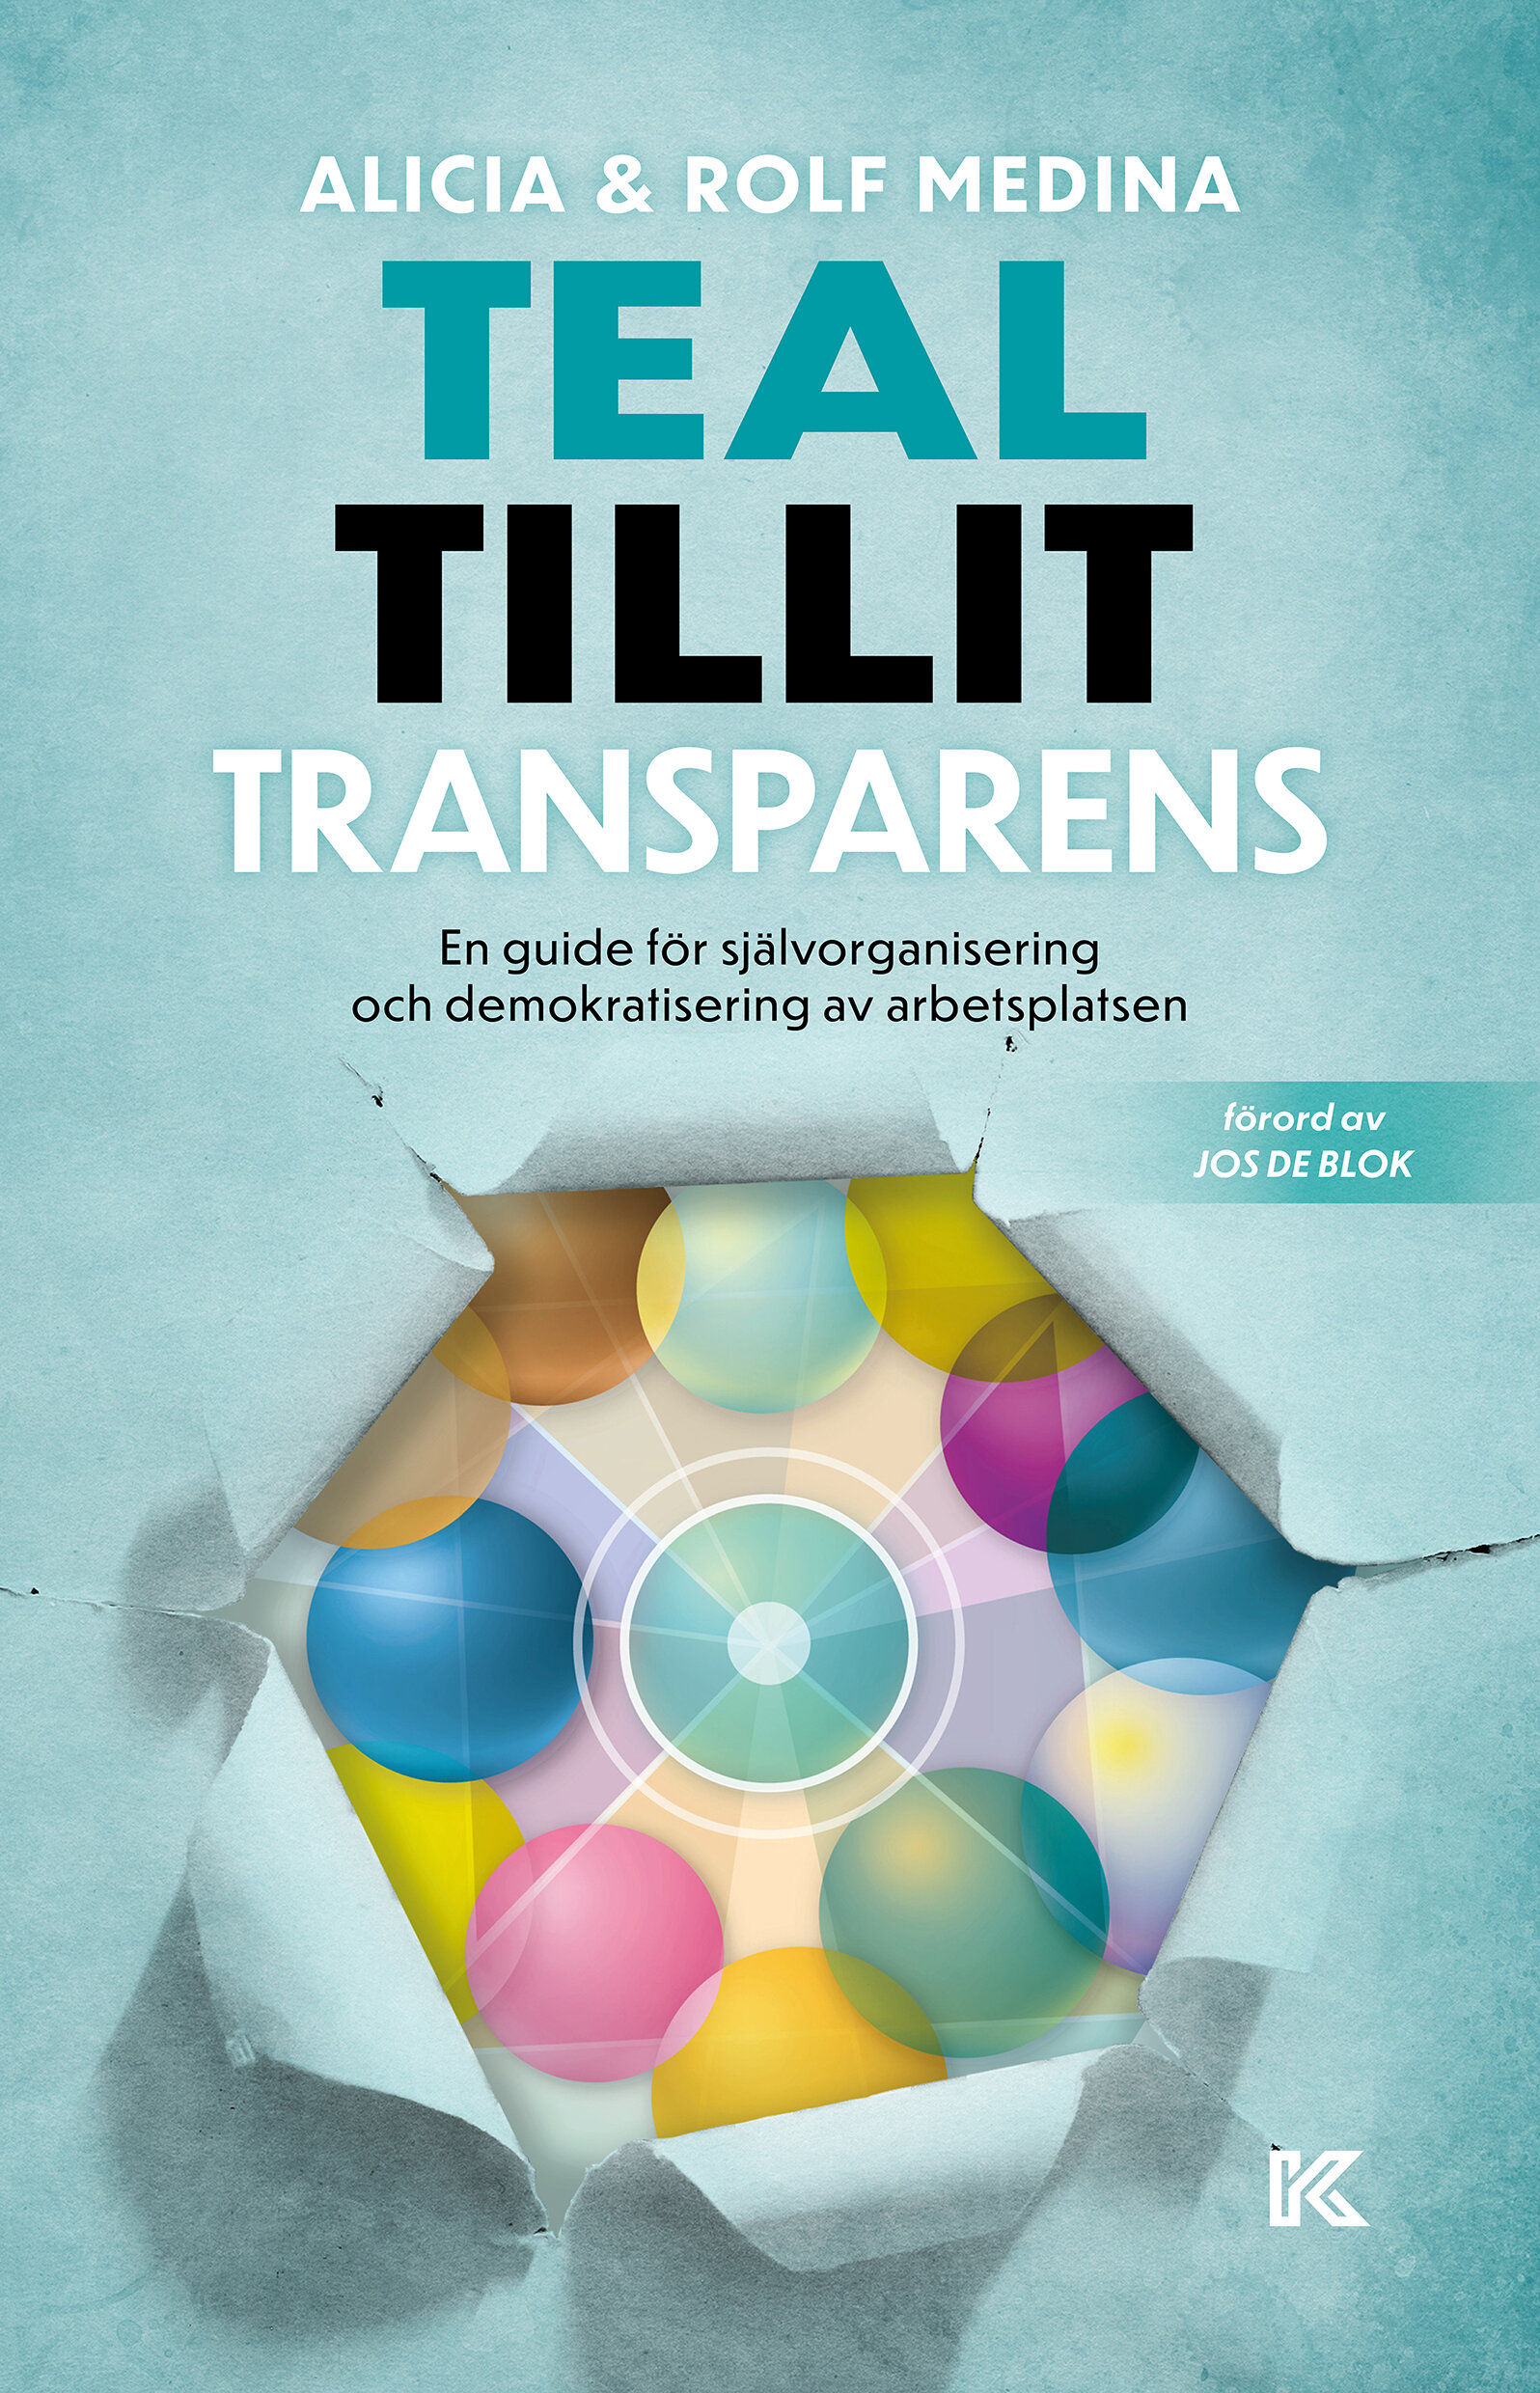 Teal. Tillit. Transparens. – En guide för självorganisering och demokratisering av arbetsplatsen